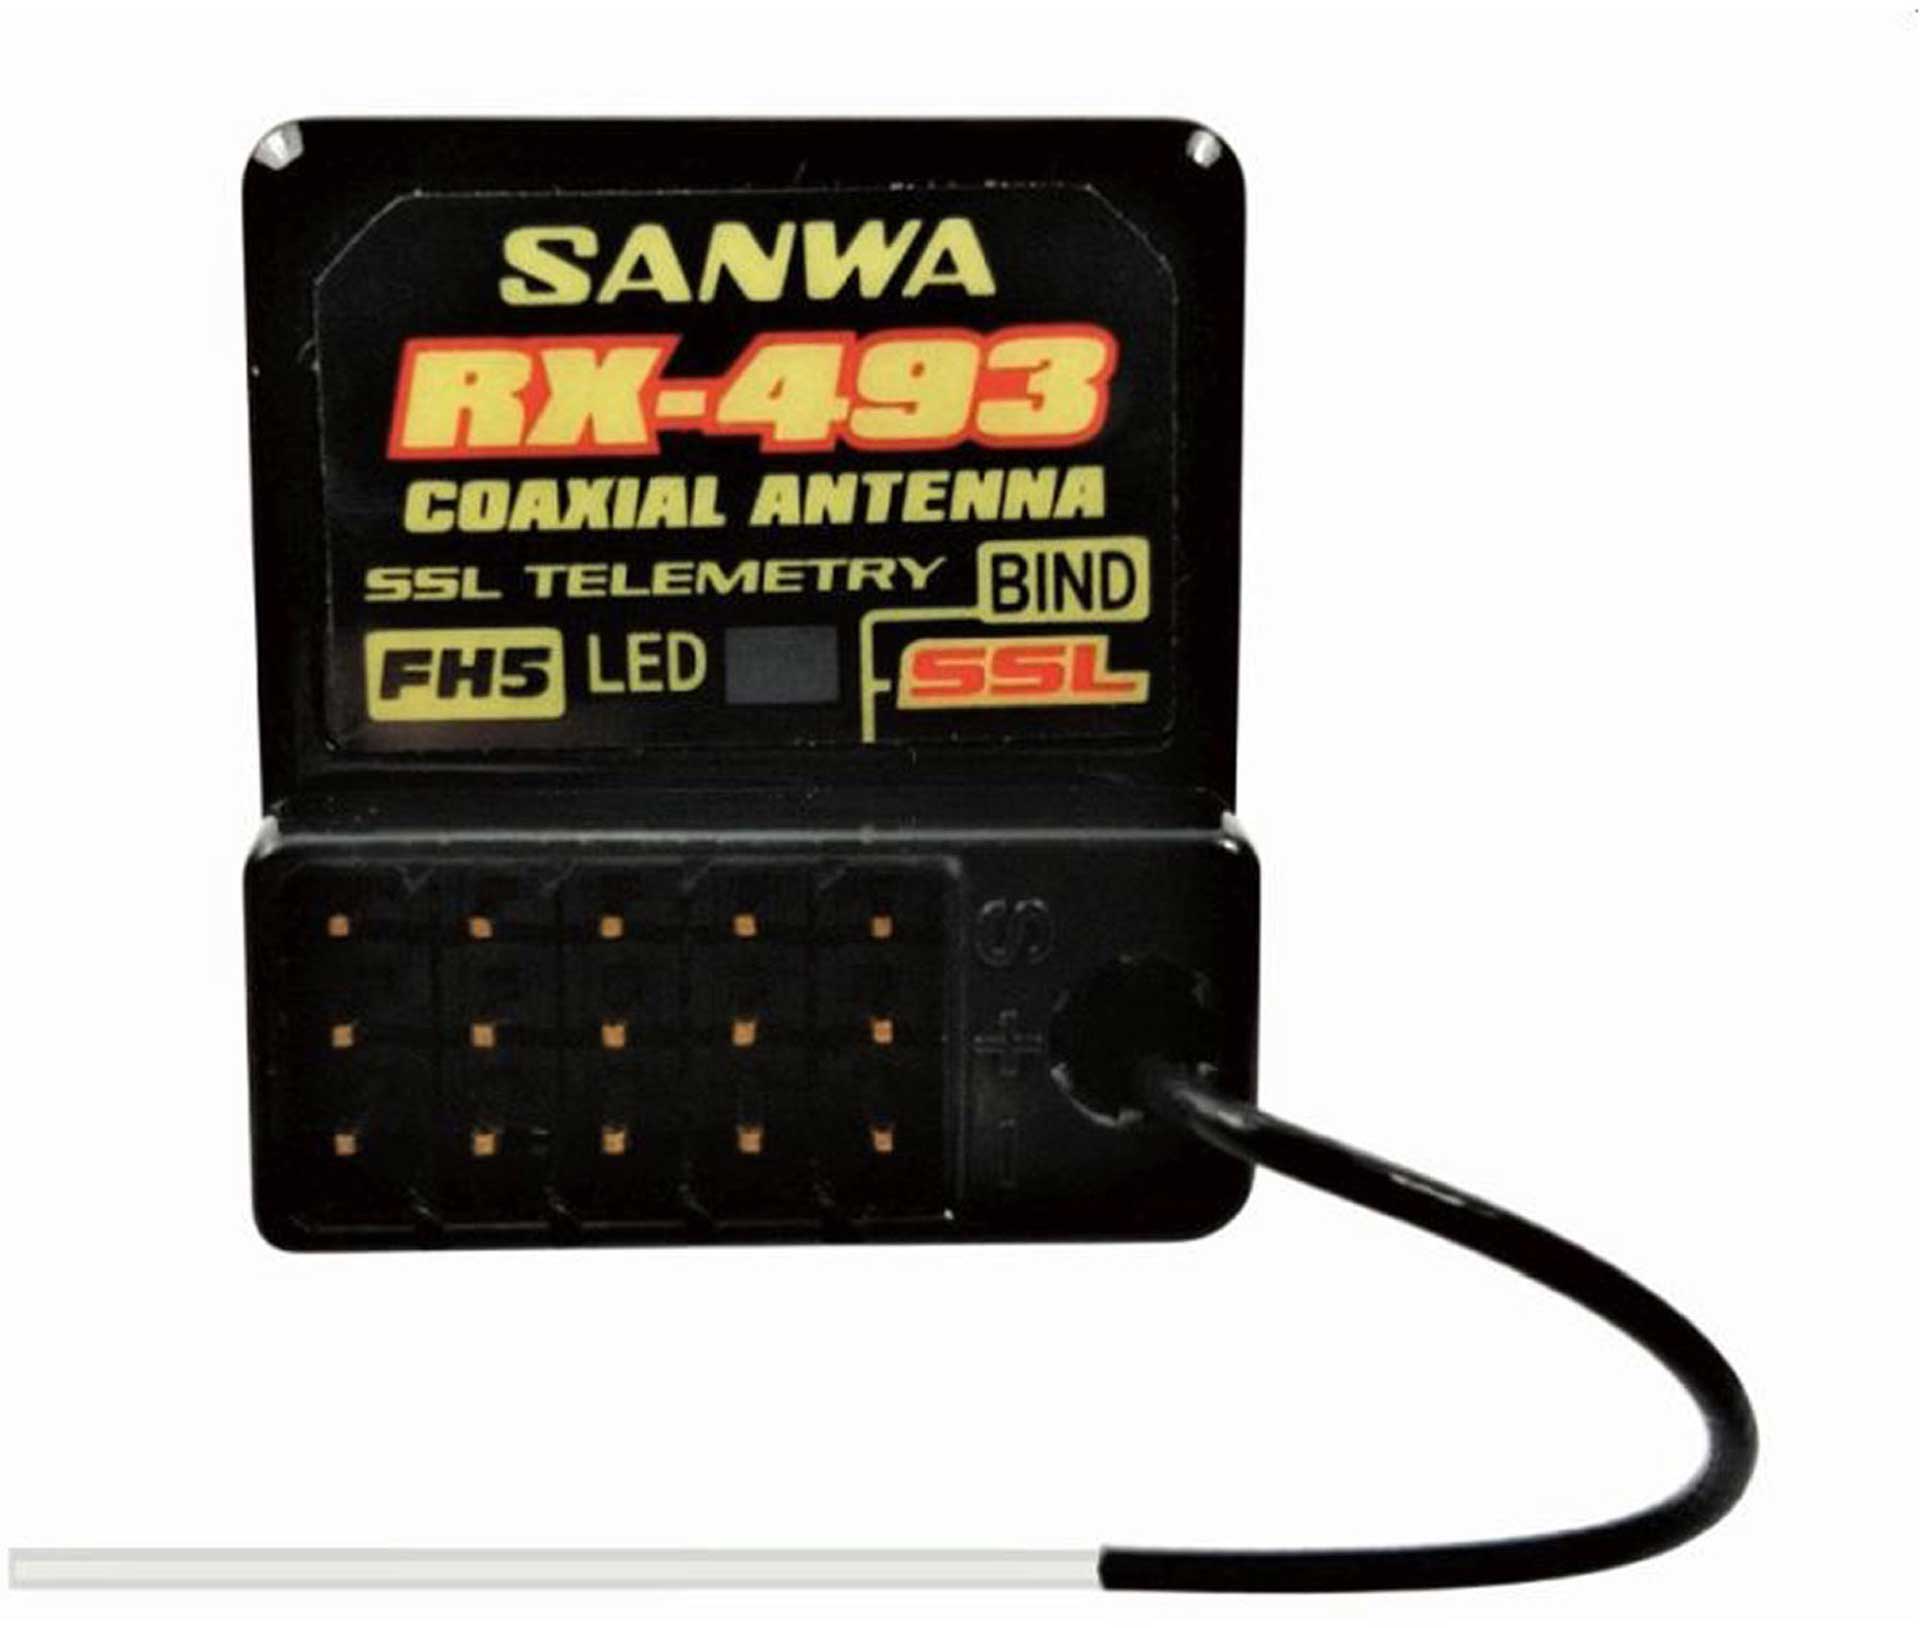 SANWA RX-493 SUR-SSL CH4 EMPFÄNGER FH5/FH4/FH3 2,4GHZ MIT ANTENNENROHR